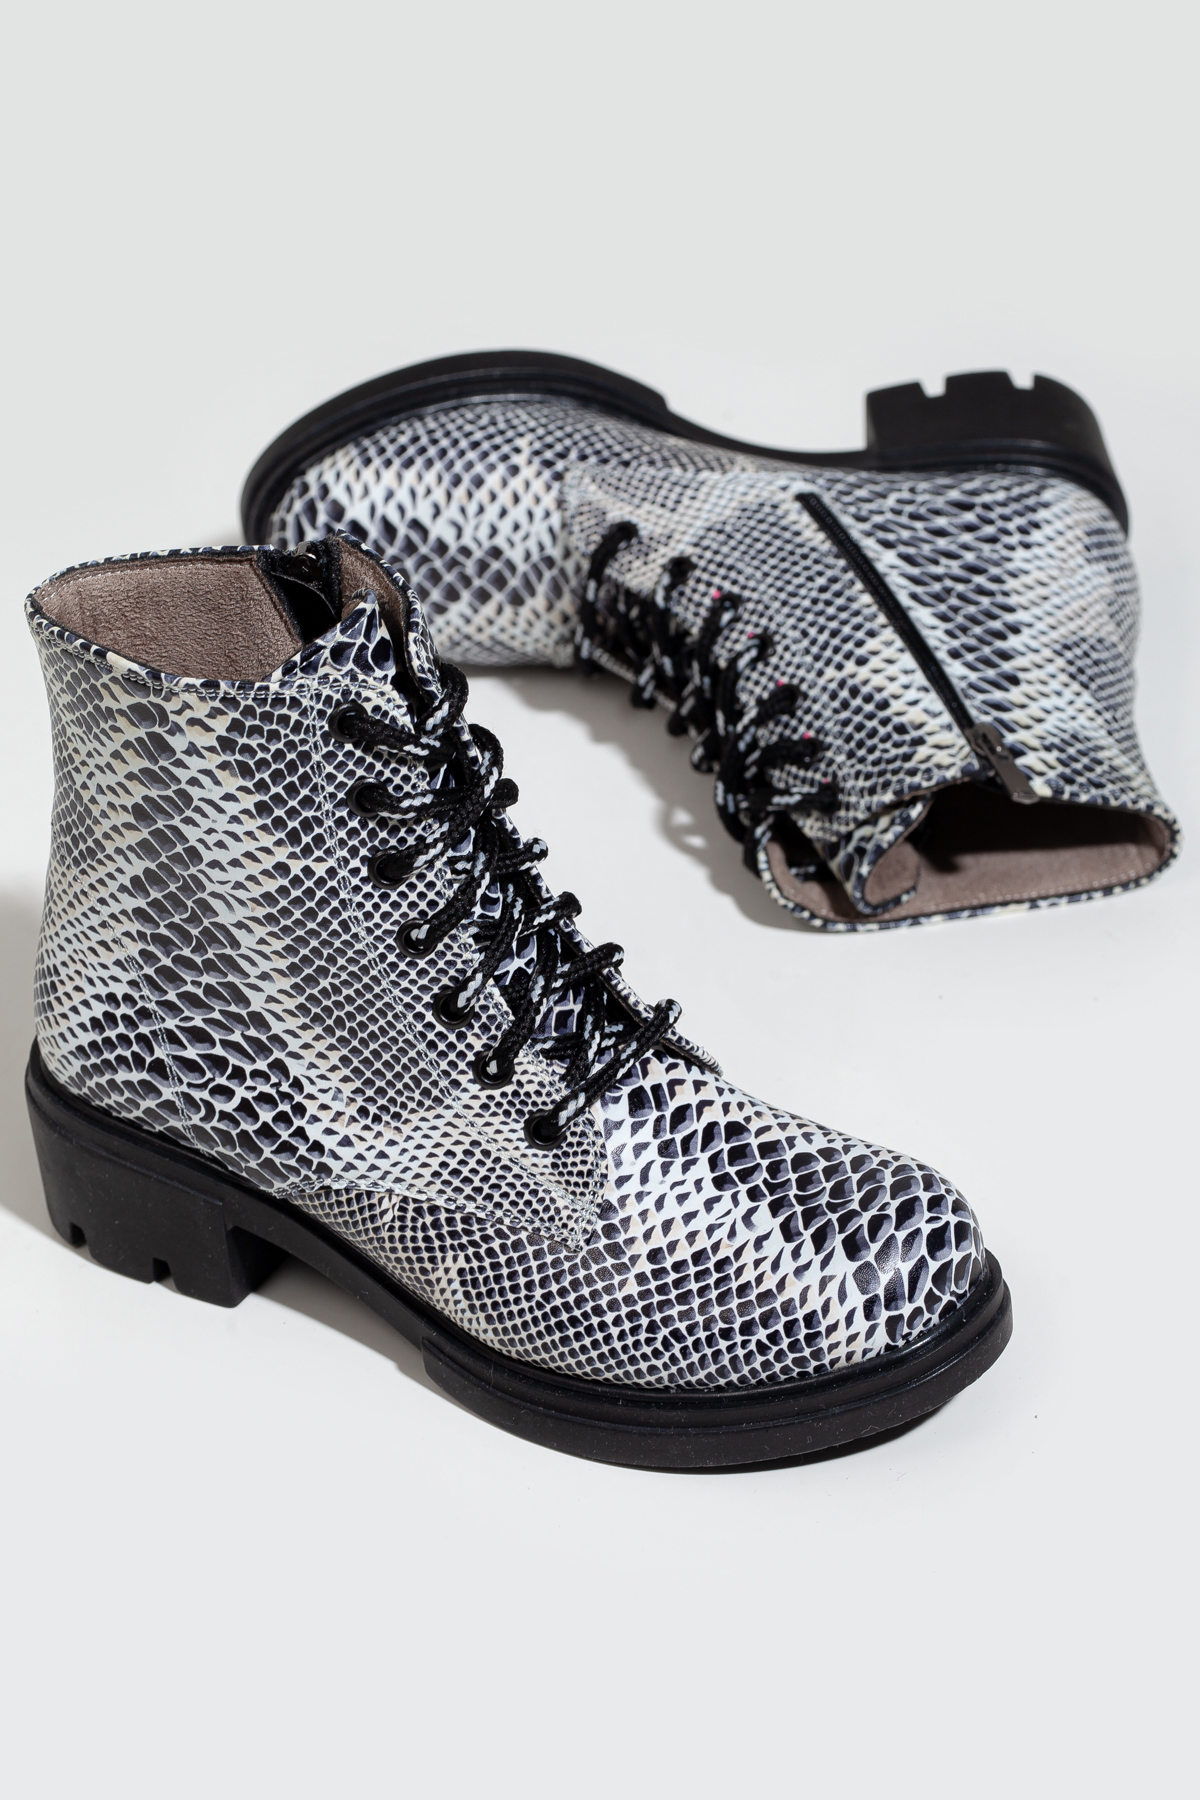 Snake print chunky heel boots